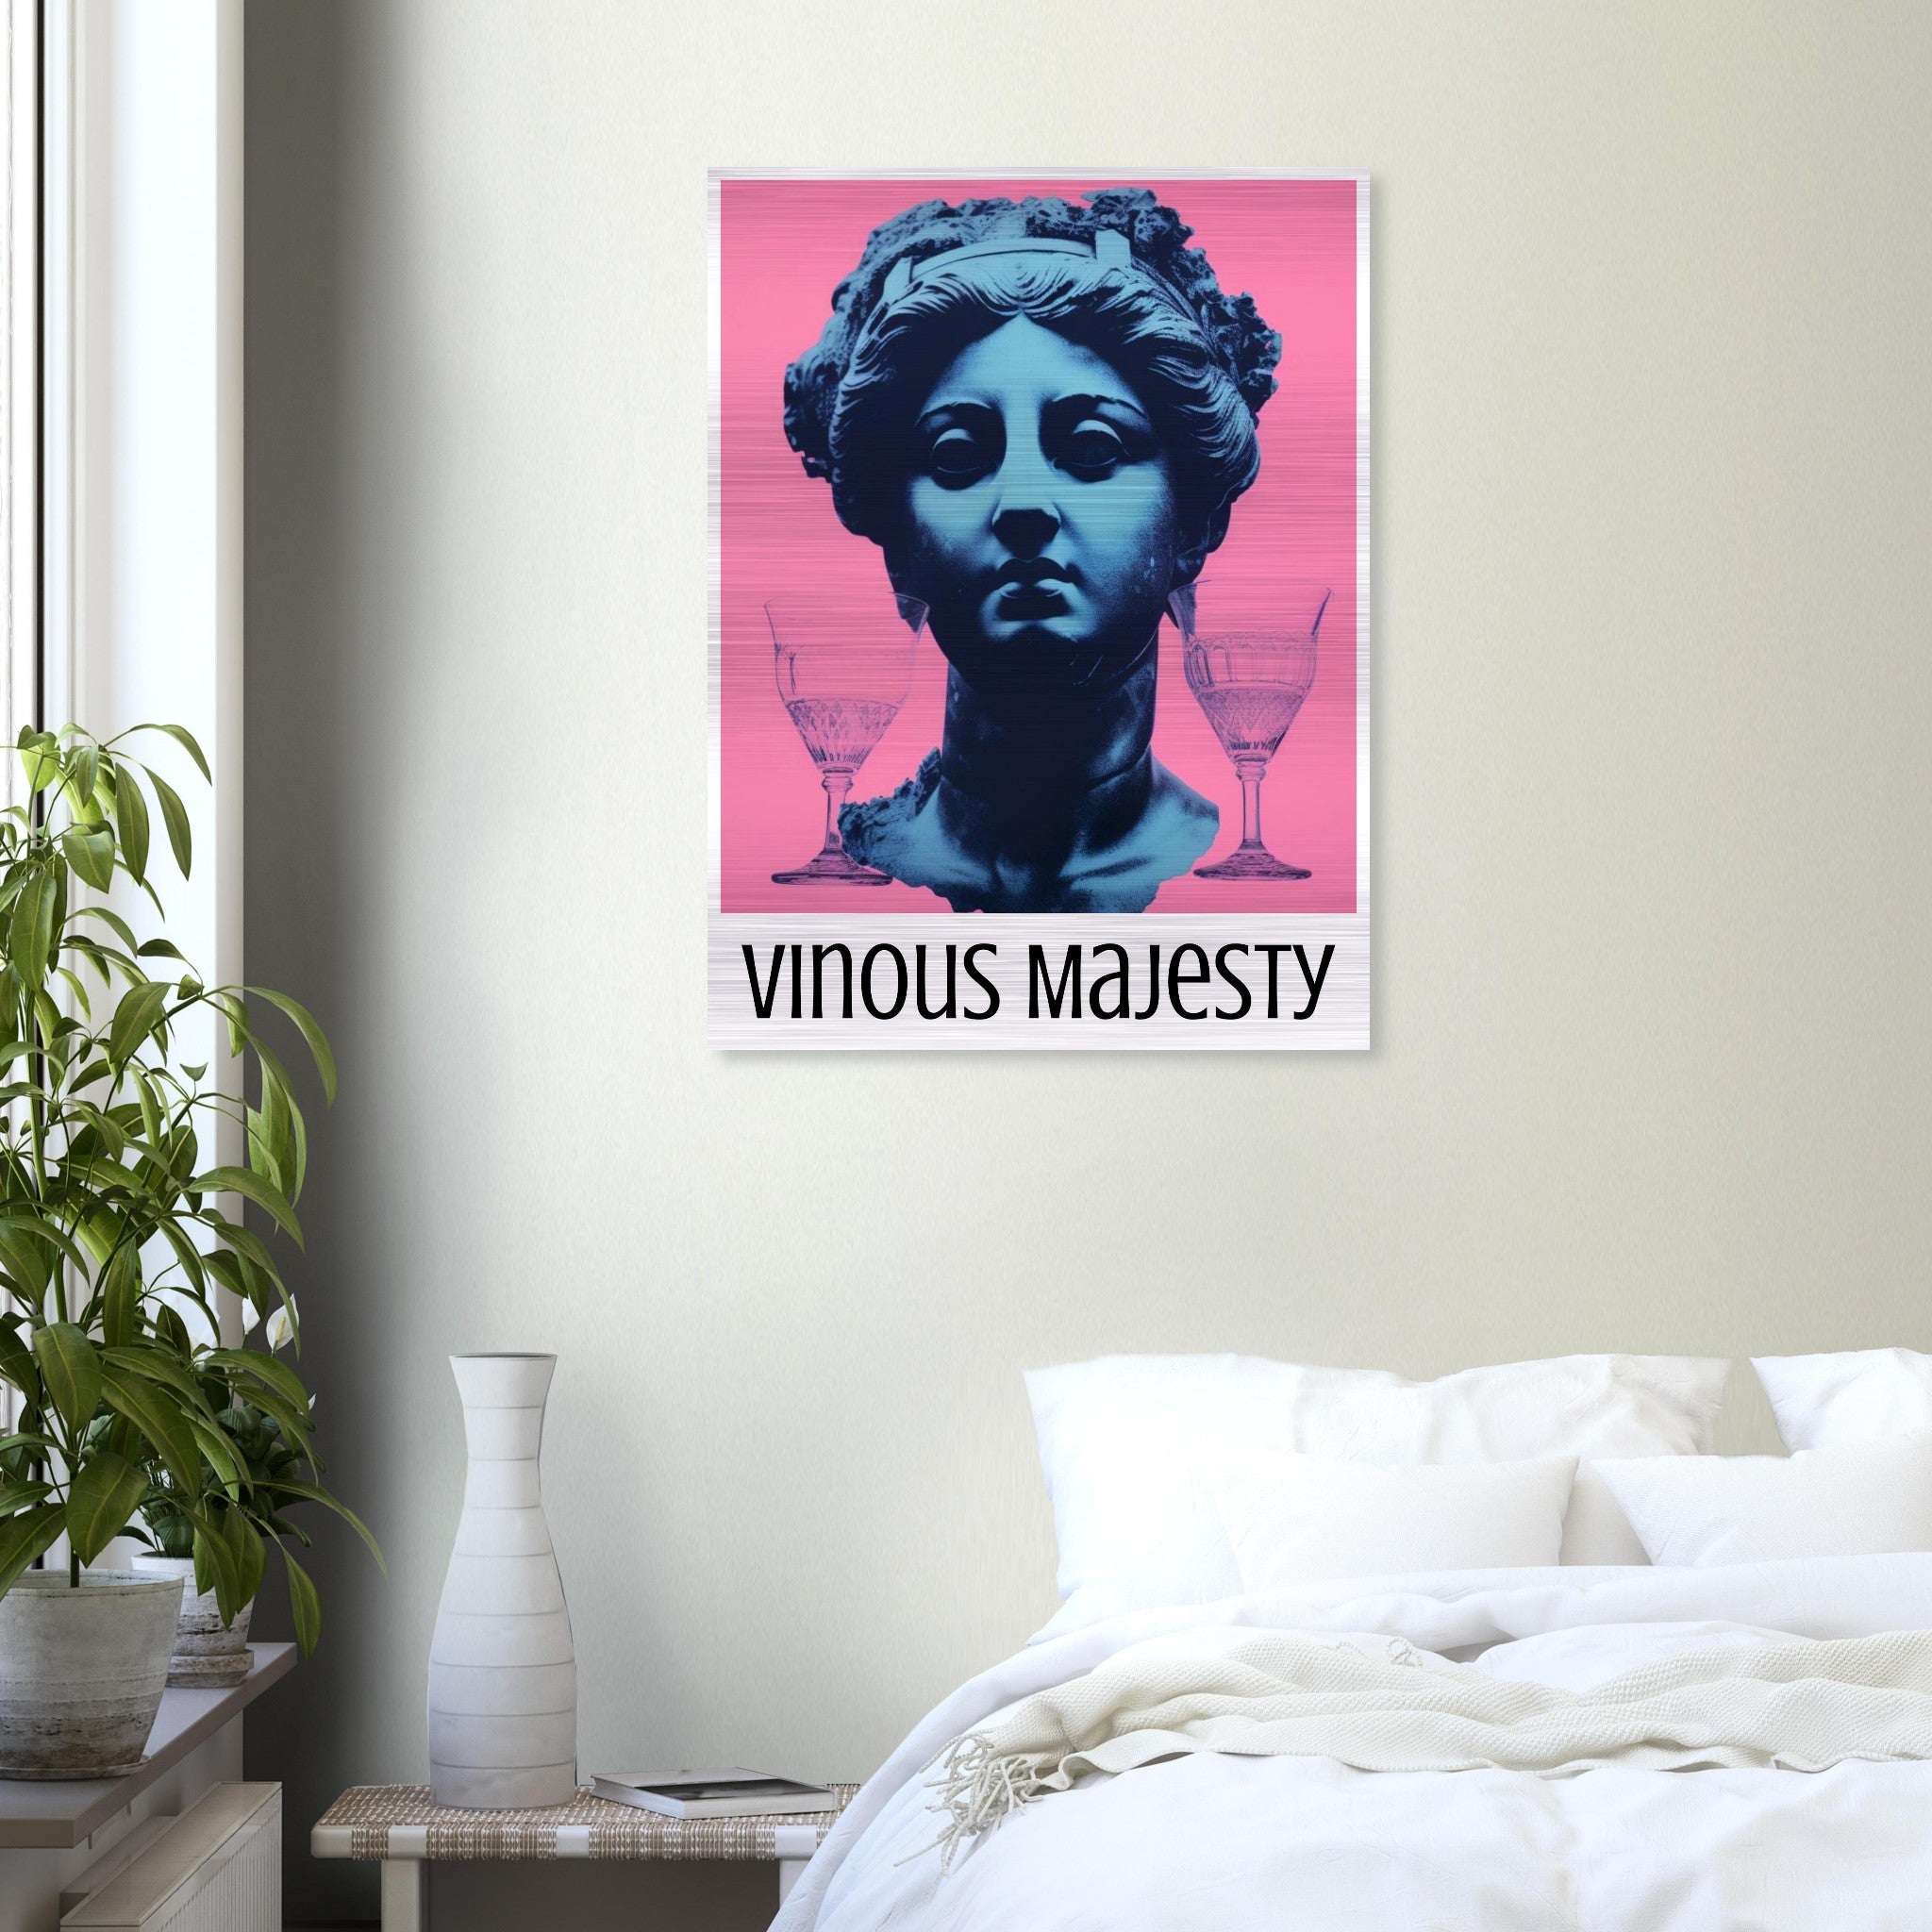 Vinous Majesty: Classic Elegance on Brushed Aluminum